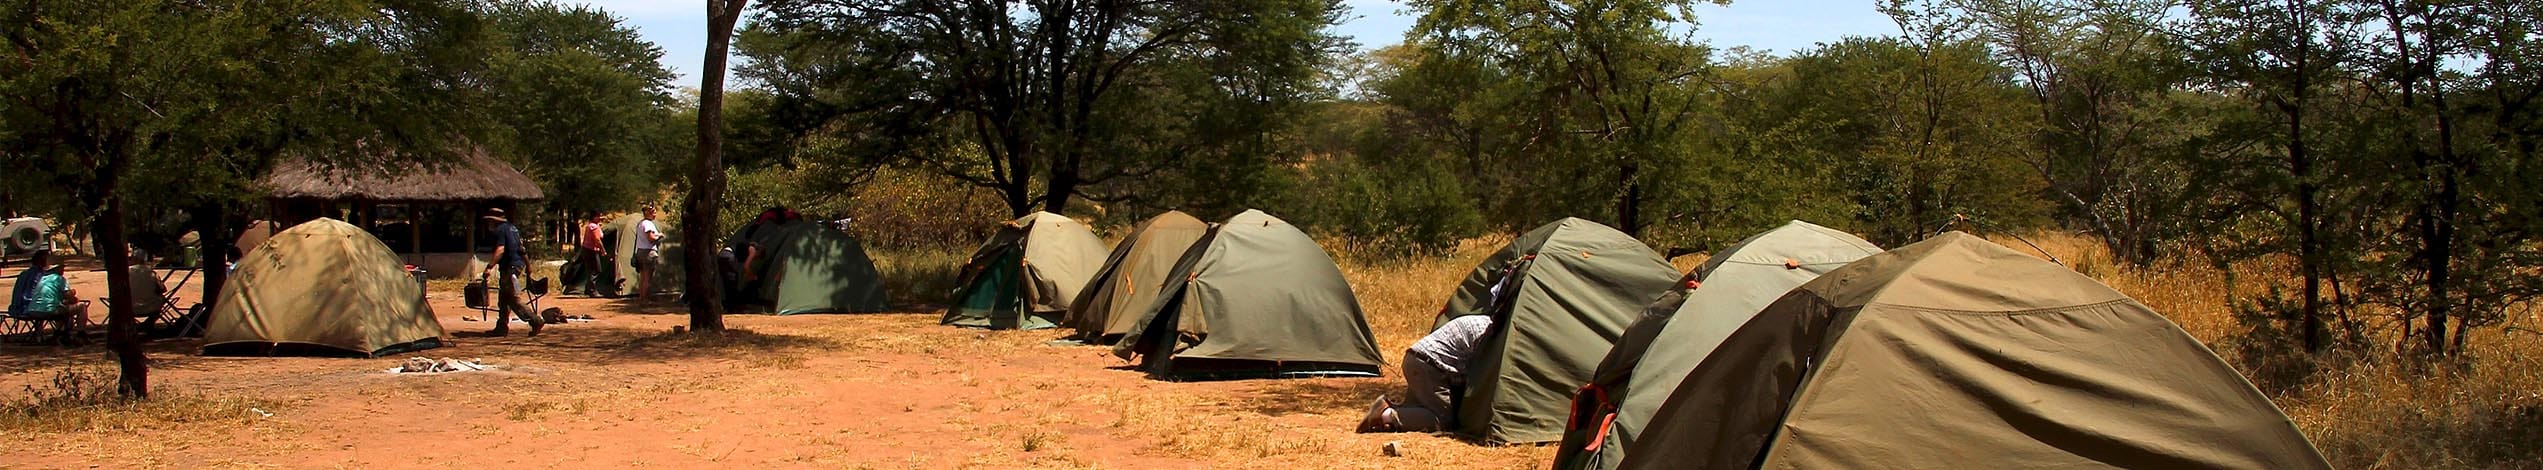 Campingsafari i Tanzania och Zanzibar